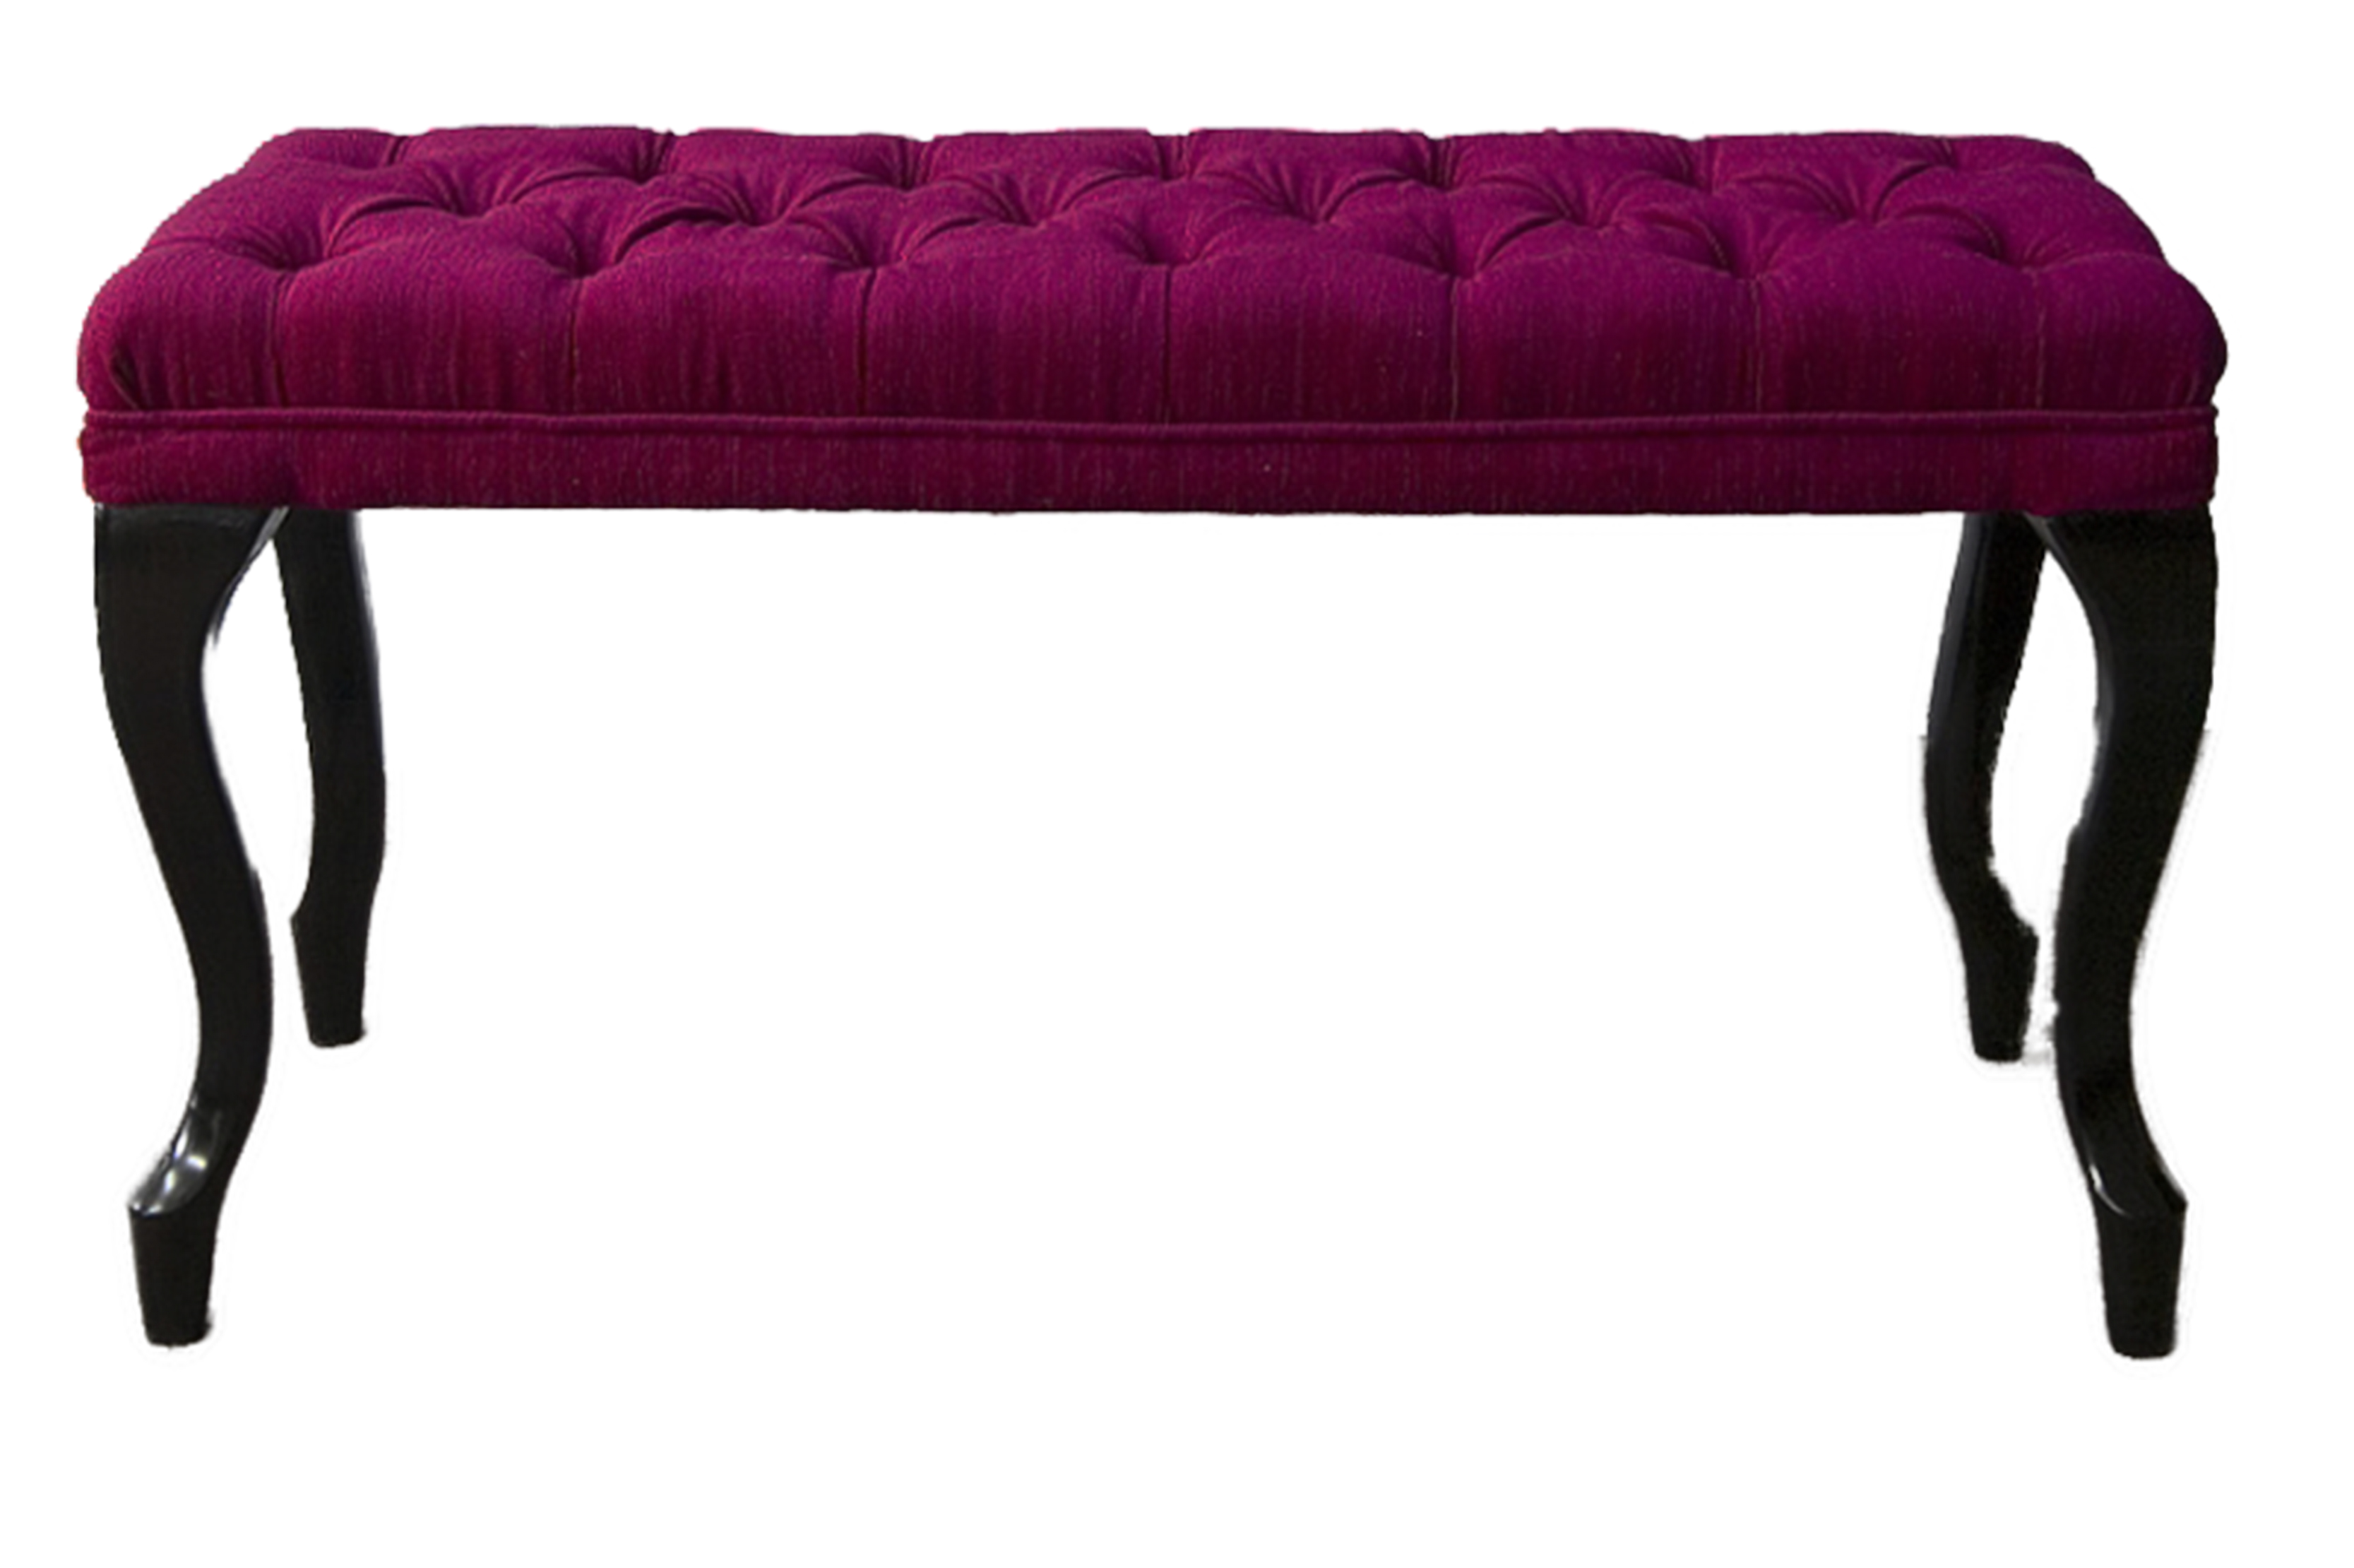 Hocker Chesterfield Beistellhocker Ottomane Couch Leder Stoff Textil